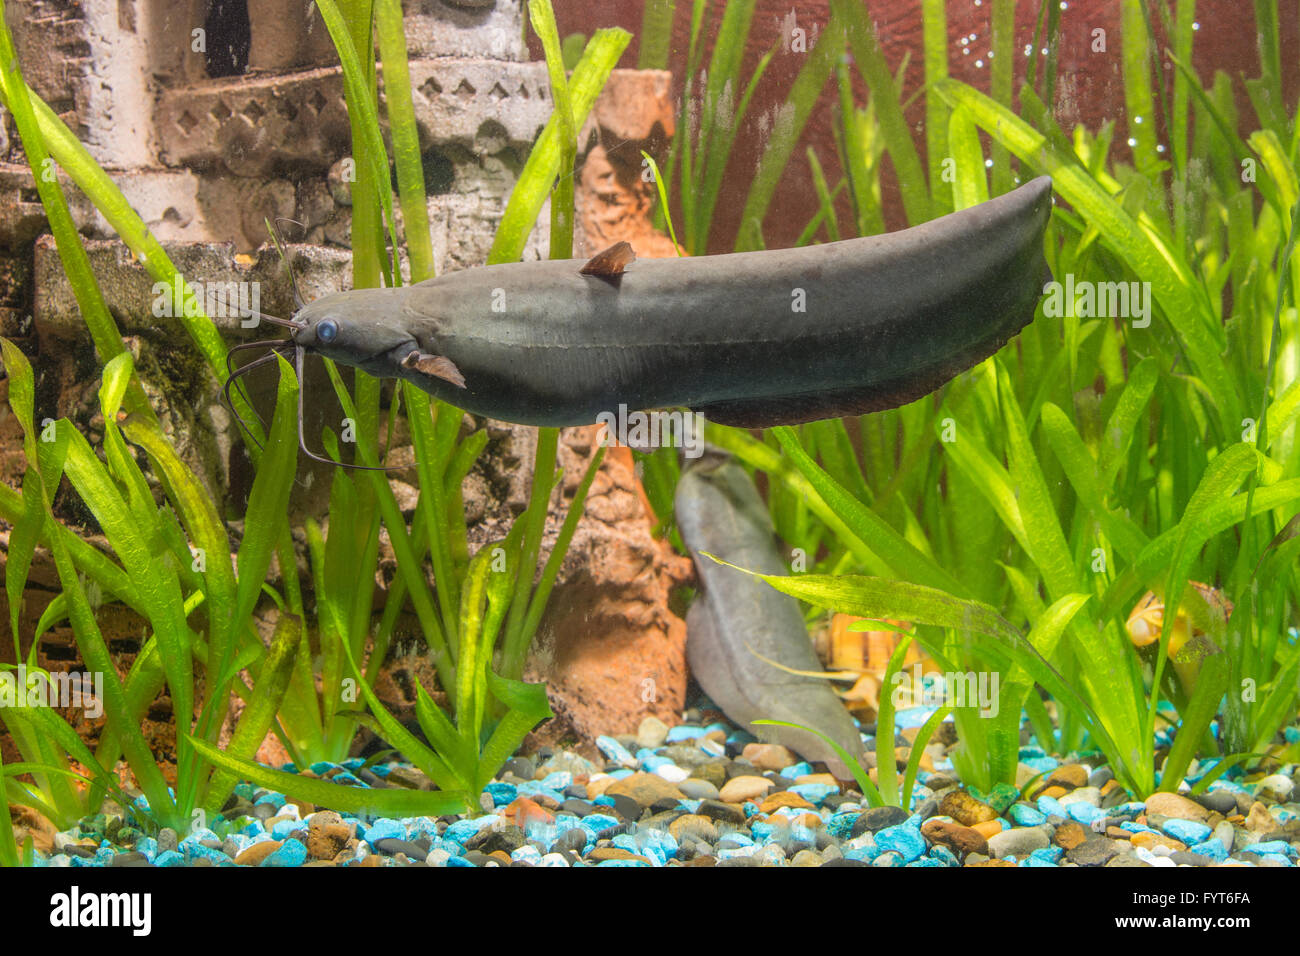 Adult Stinging catfish swimming in aquarium Stock Photo